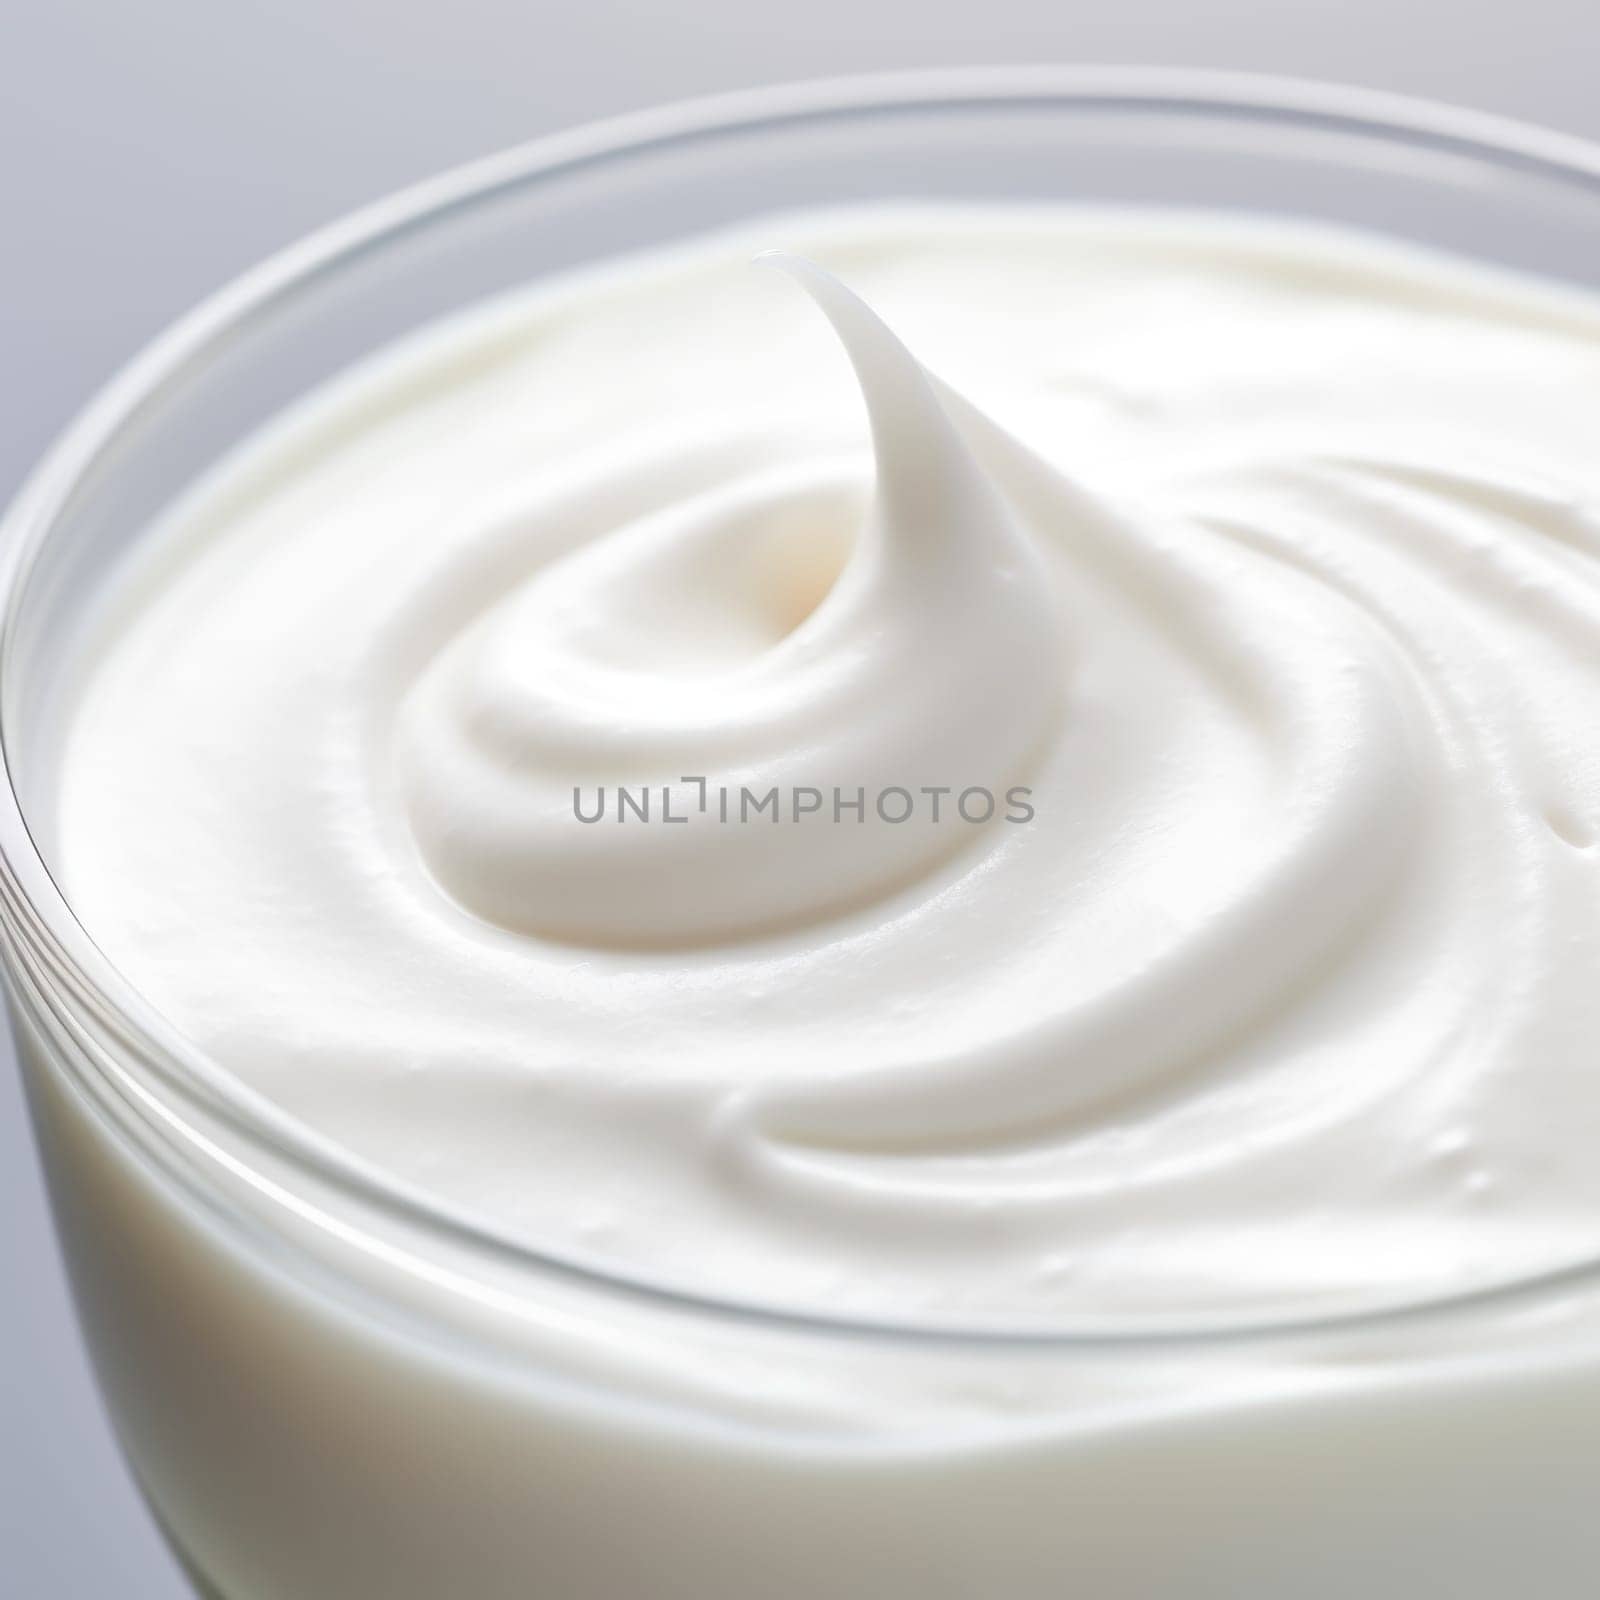 A close up of a glass of yogurt, AI by starush